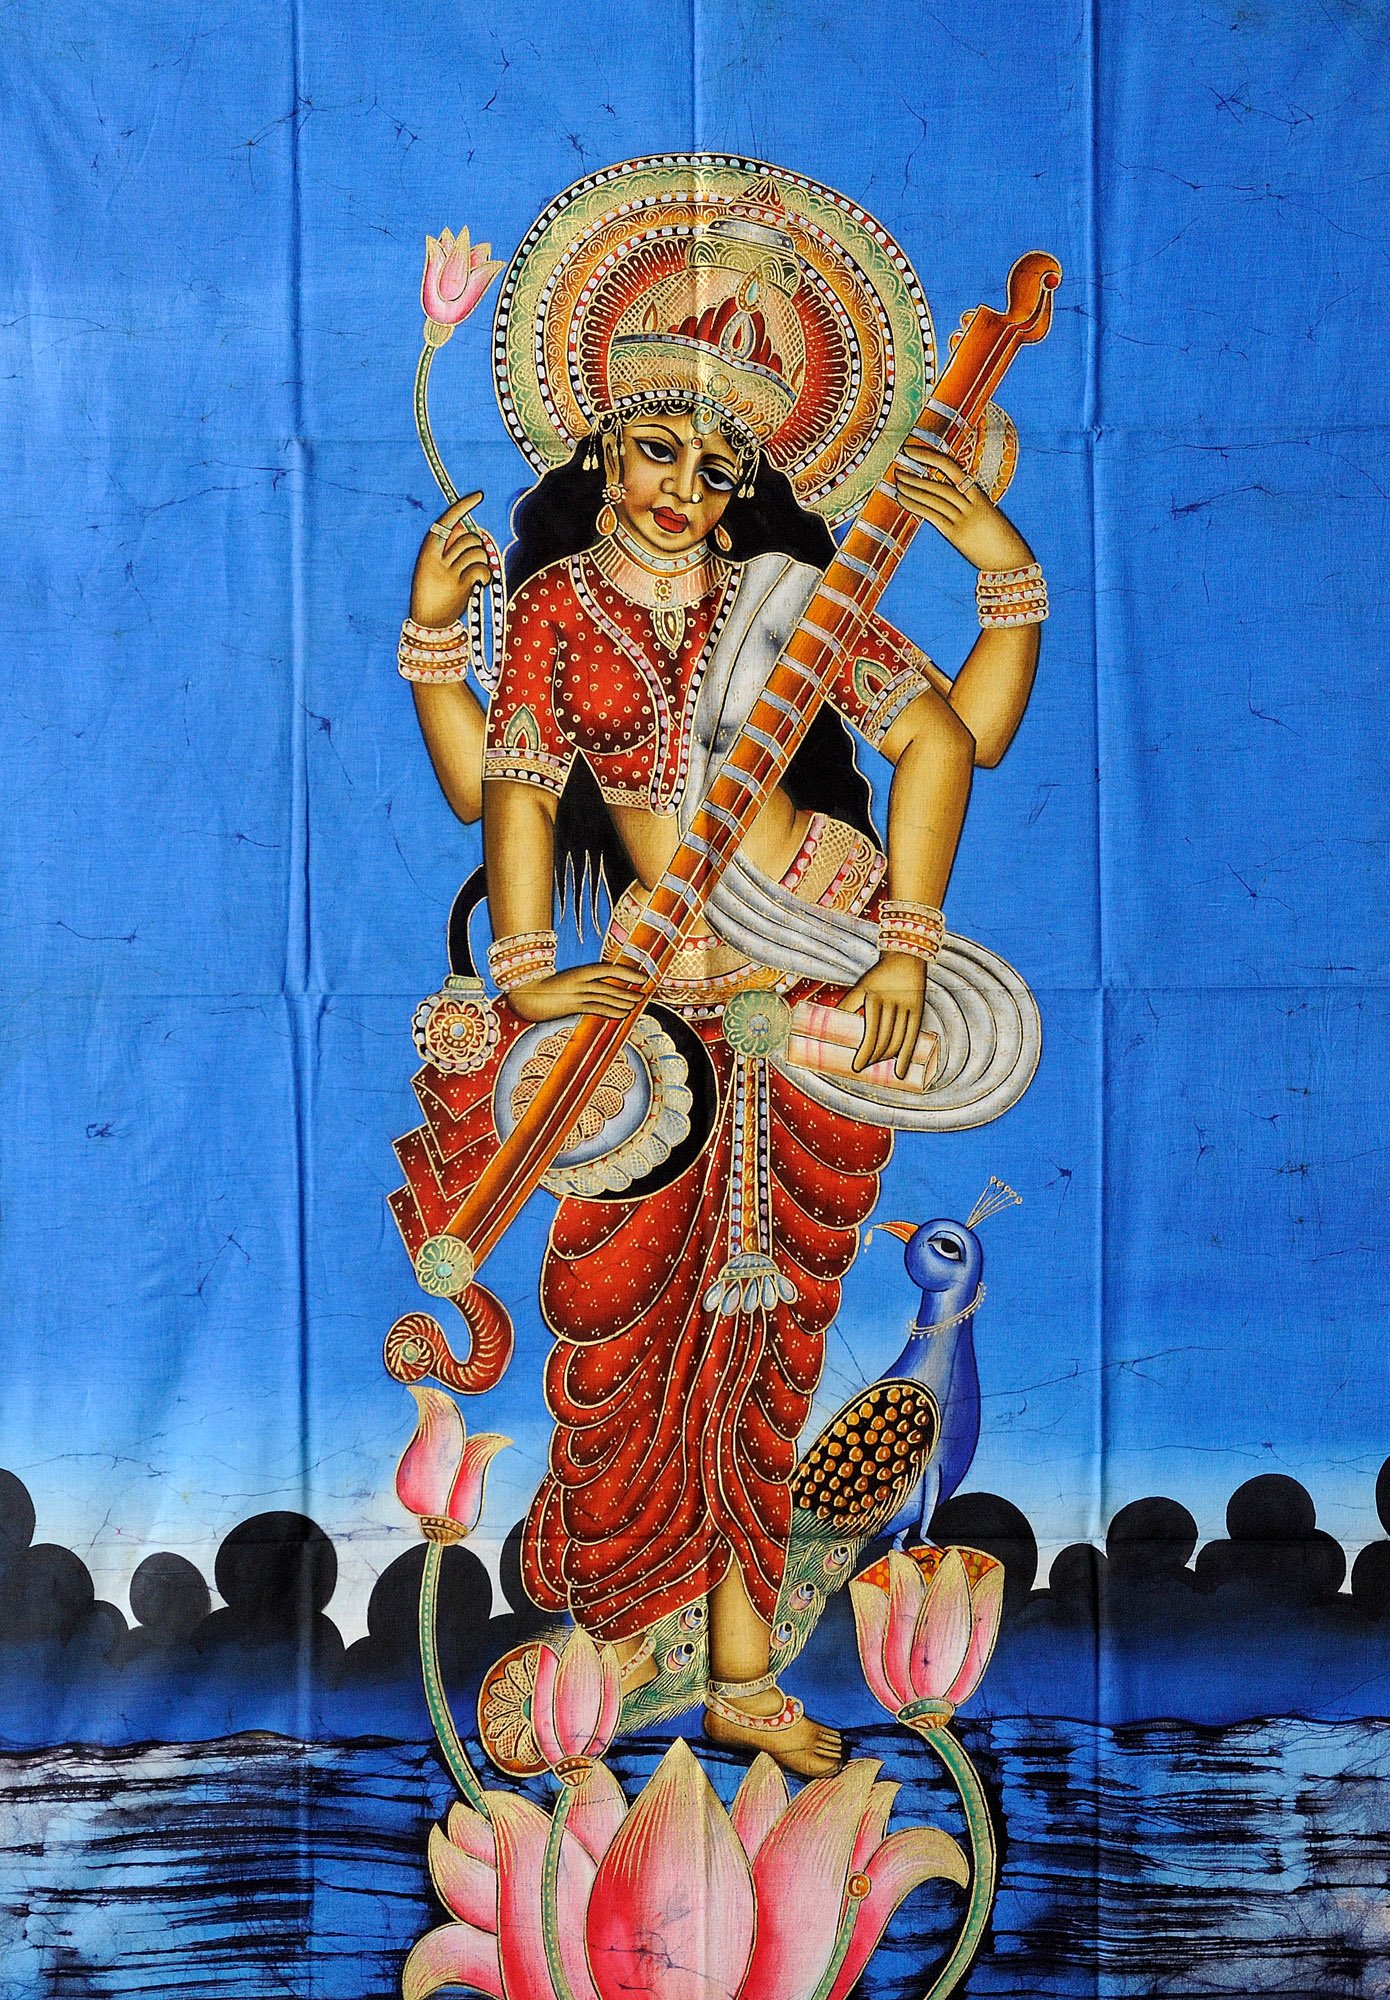 Saraswati the Goddess of Wisdom, Music, and Dance